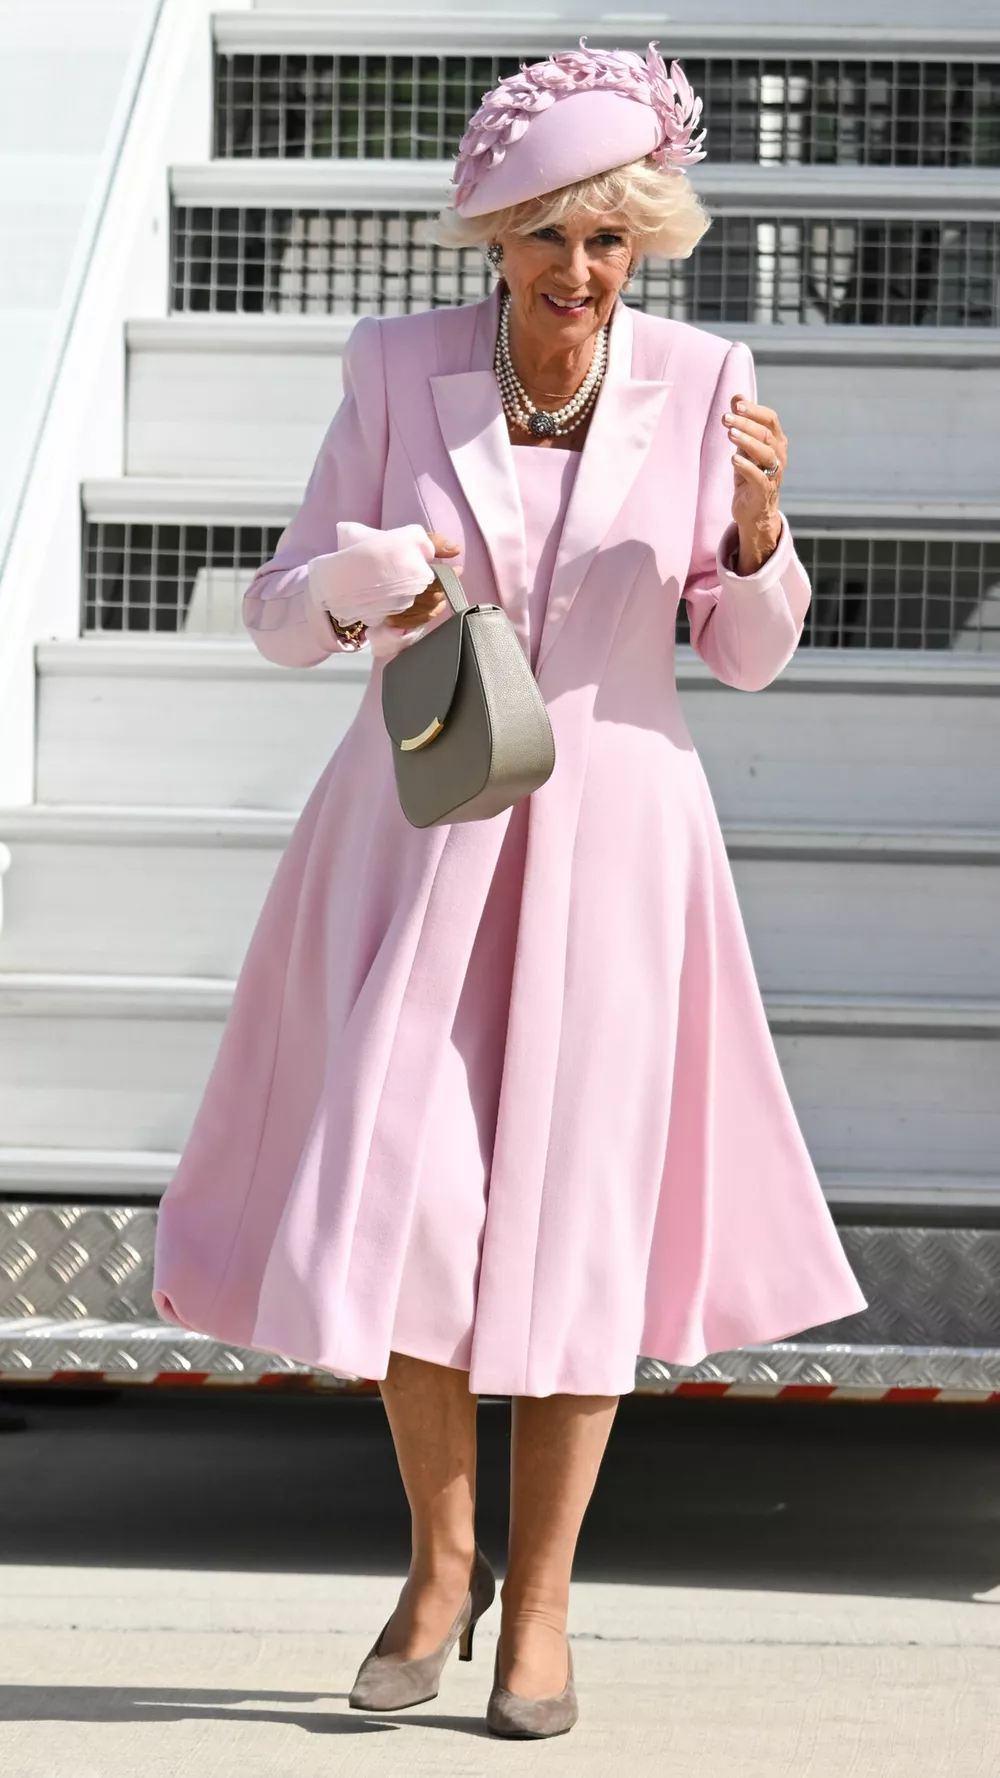 Королева Камилла - достойная ученица Елизаветы II. Прибыв во Францию, она спускалась по трапу в нежно-розовом костюме, который будет различим в толпе, в шляпке, в колготках, с маникюром натурального оттенка и сумочкой в левой руке.